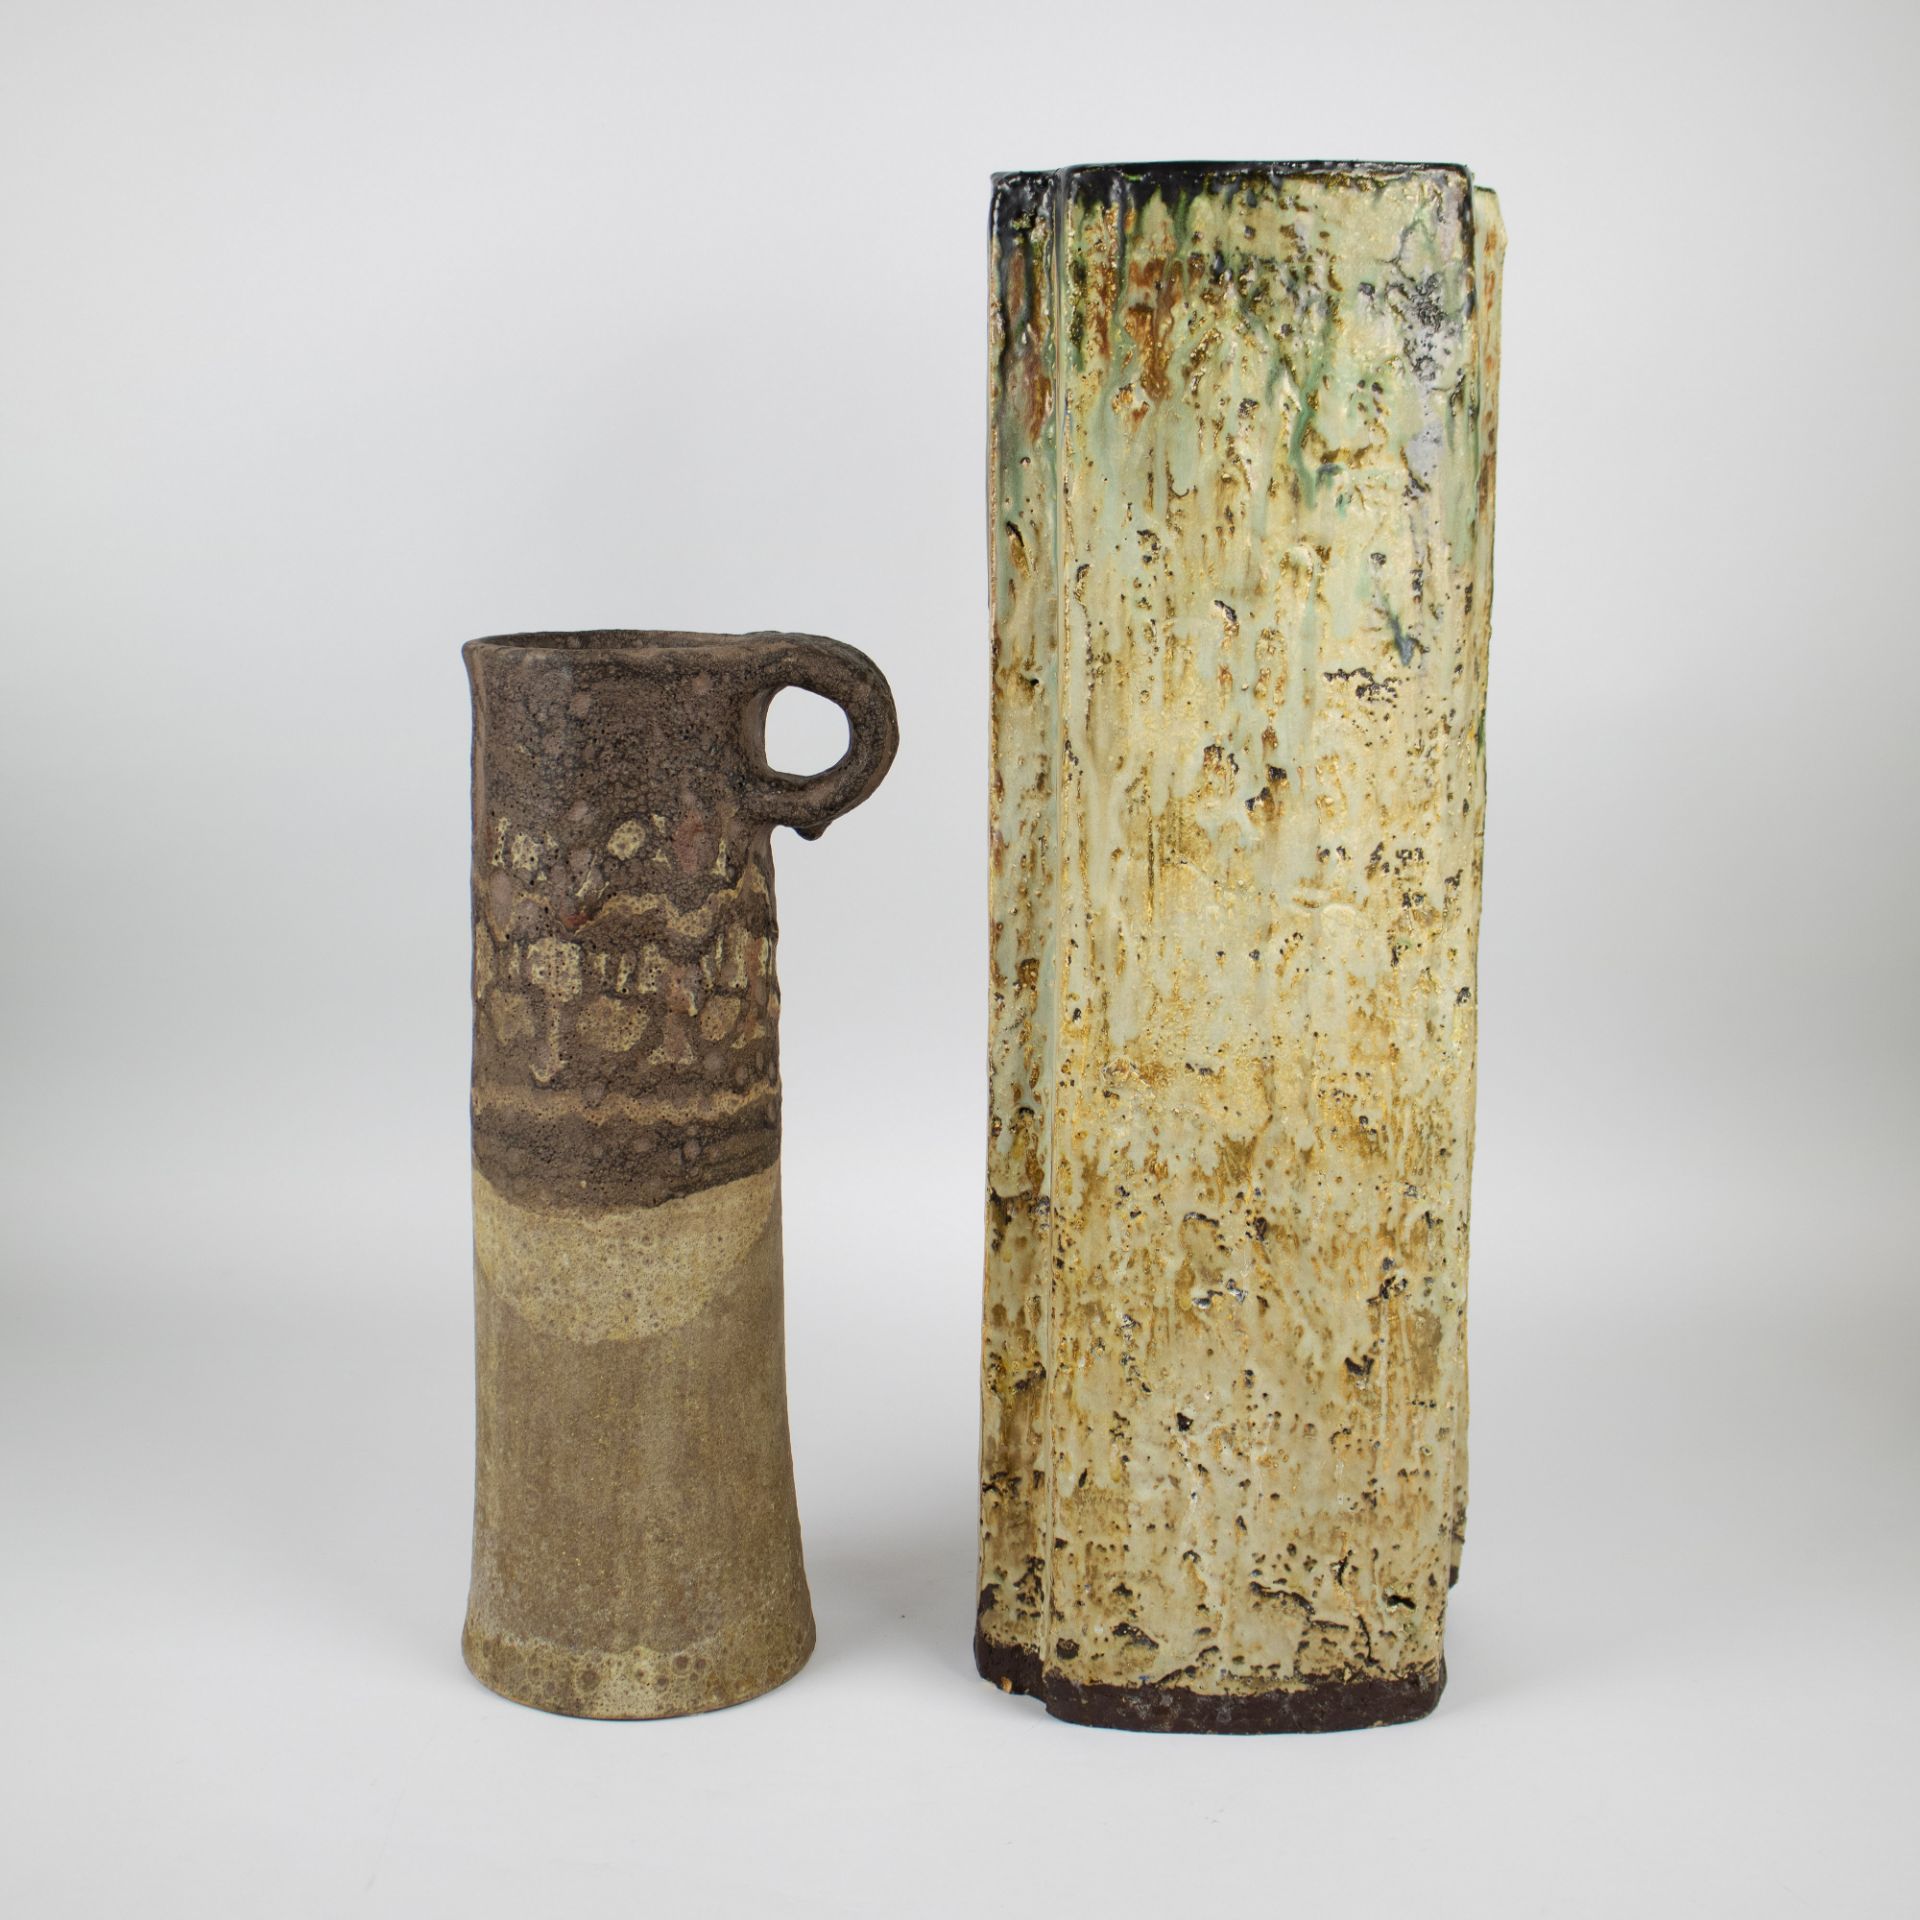 2 ceramic vases Schäffenacker and Werkstâtten - Image 3 of 5